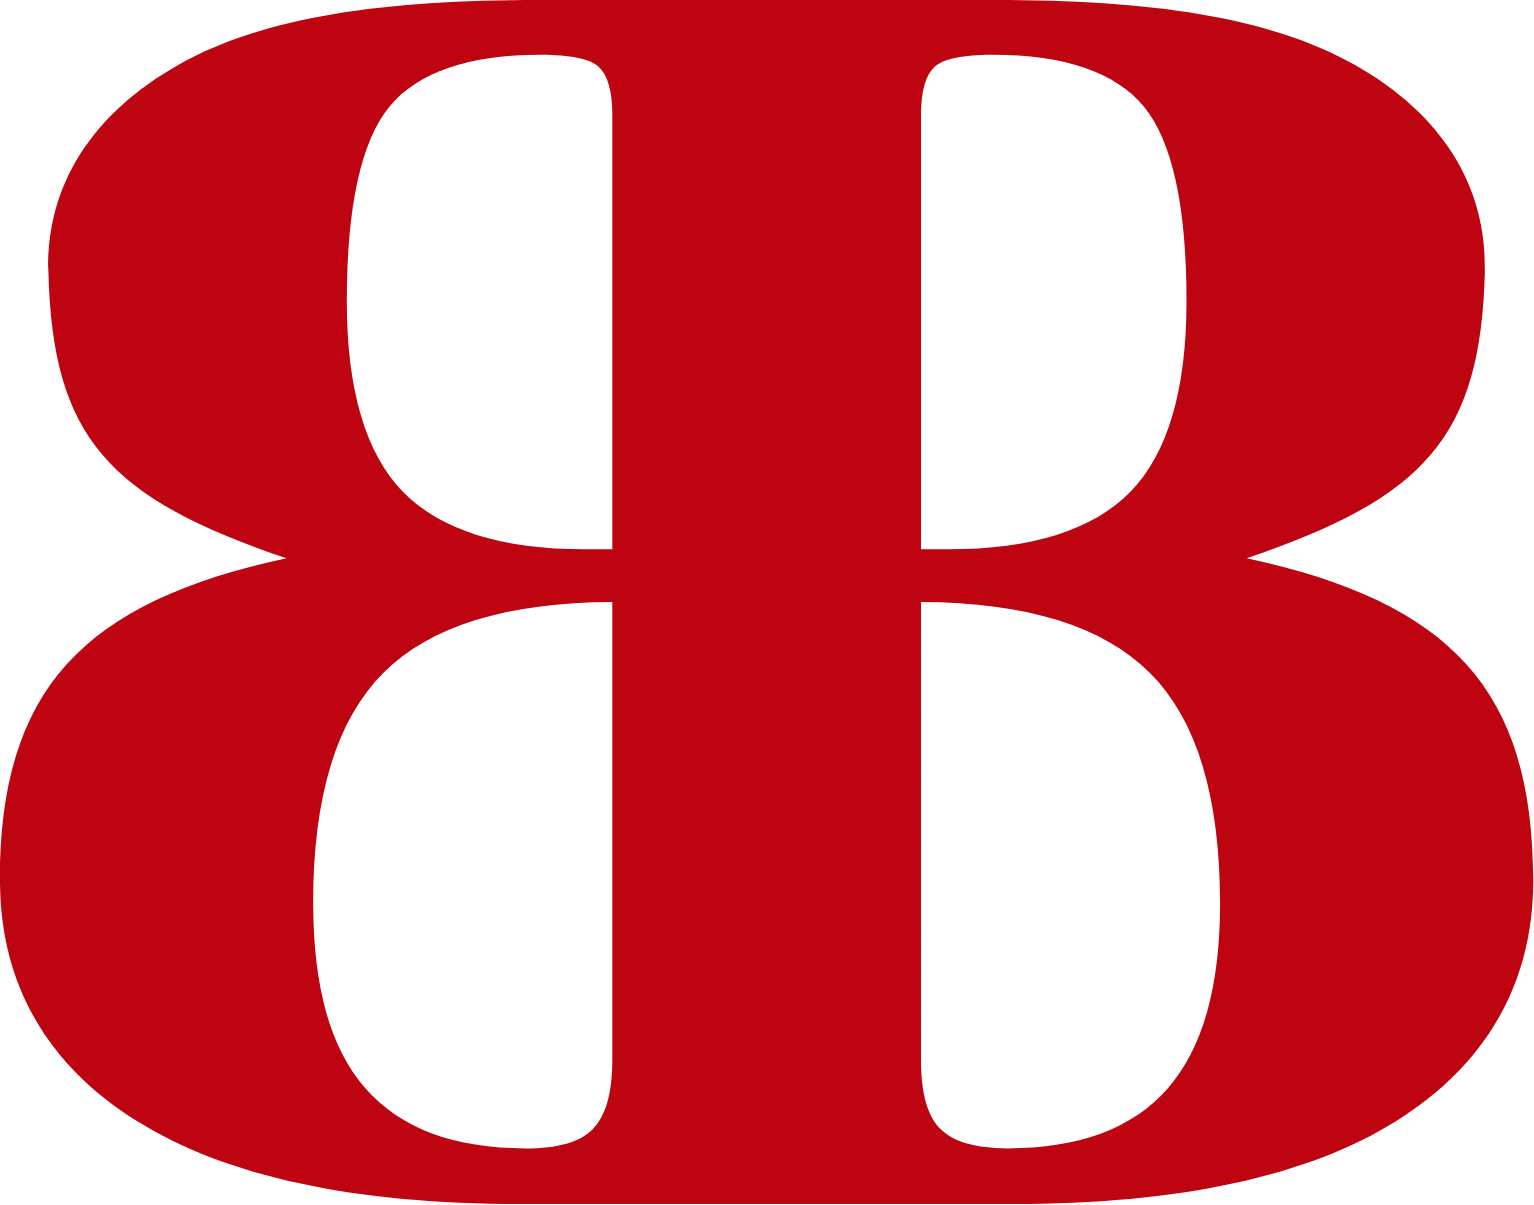 Banco del Bajío logo (transparent PNG)